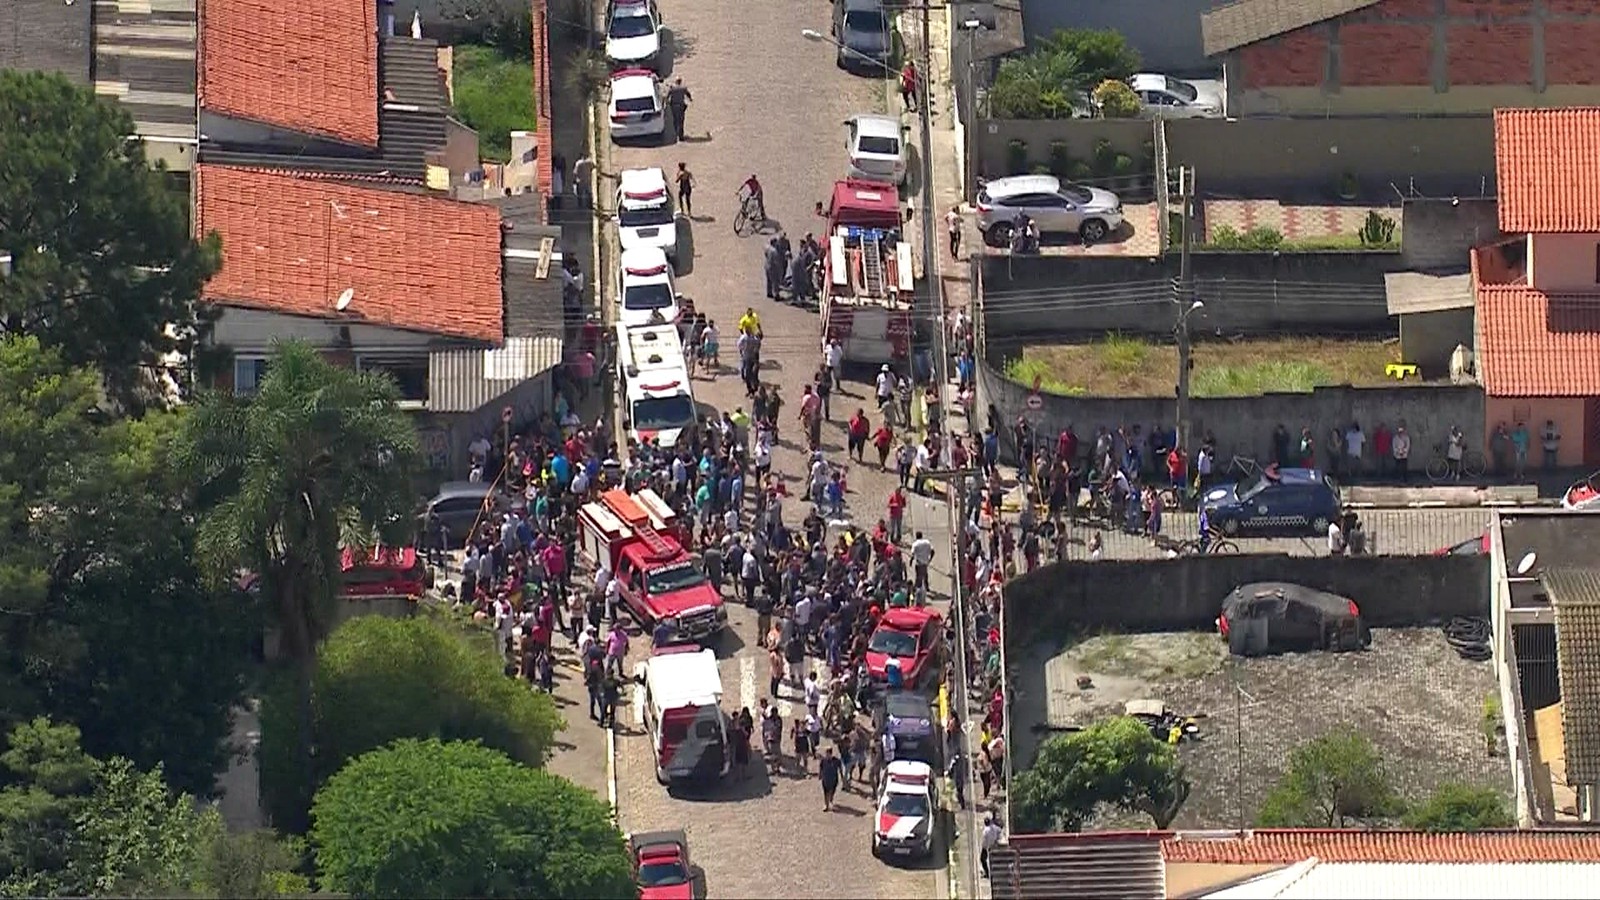 Adolescentes invadem escola e deixa 8 mortos em Suzano